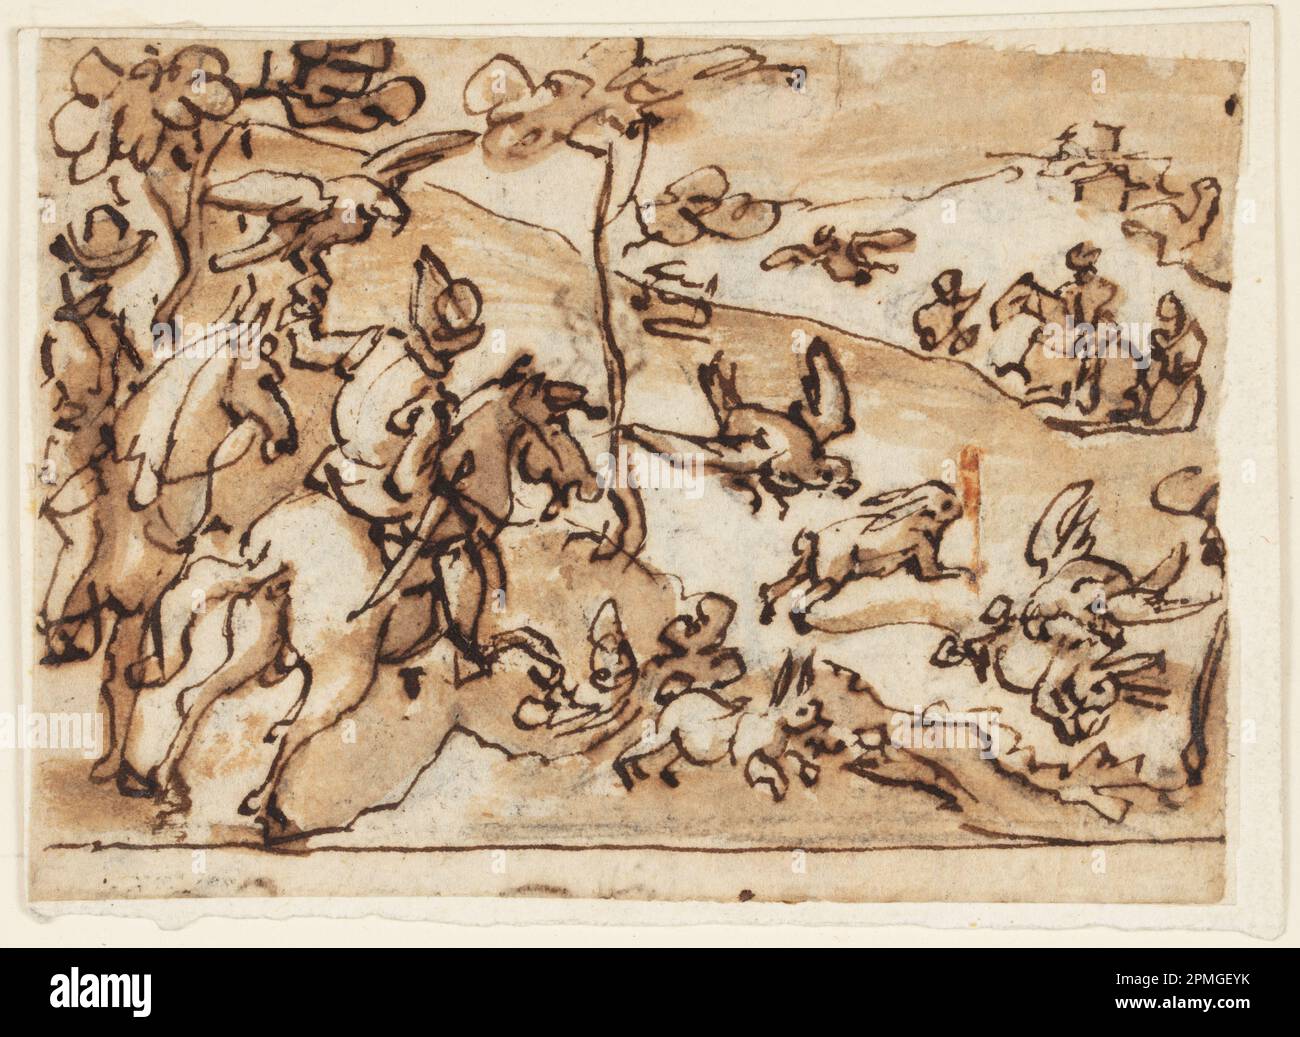 Zeichnung, Hare Hunt mit Falken; Jan van der Straet, Stradanus (Flämisch, 1523–1605); Niederlande; Stift und Tinte, Bürste und braunes Abwaschen über Graphit auf liegendem Papier; 7,4 x 10,4 cm (2 15/16 x 4 1/8 Zoll) Stockfoto